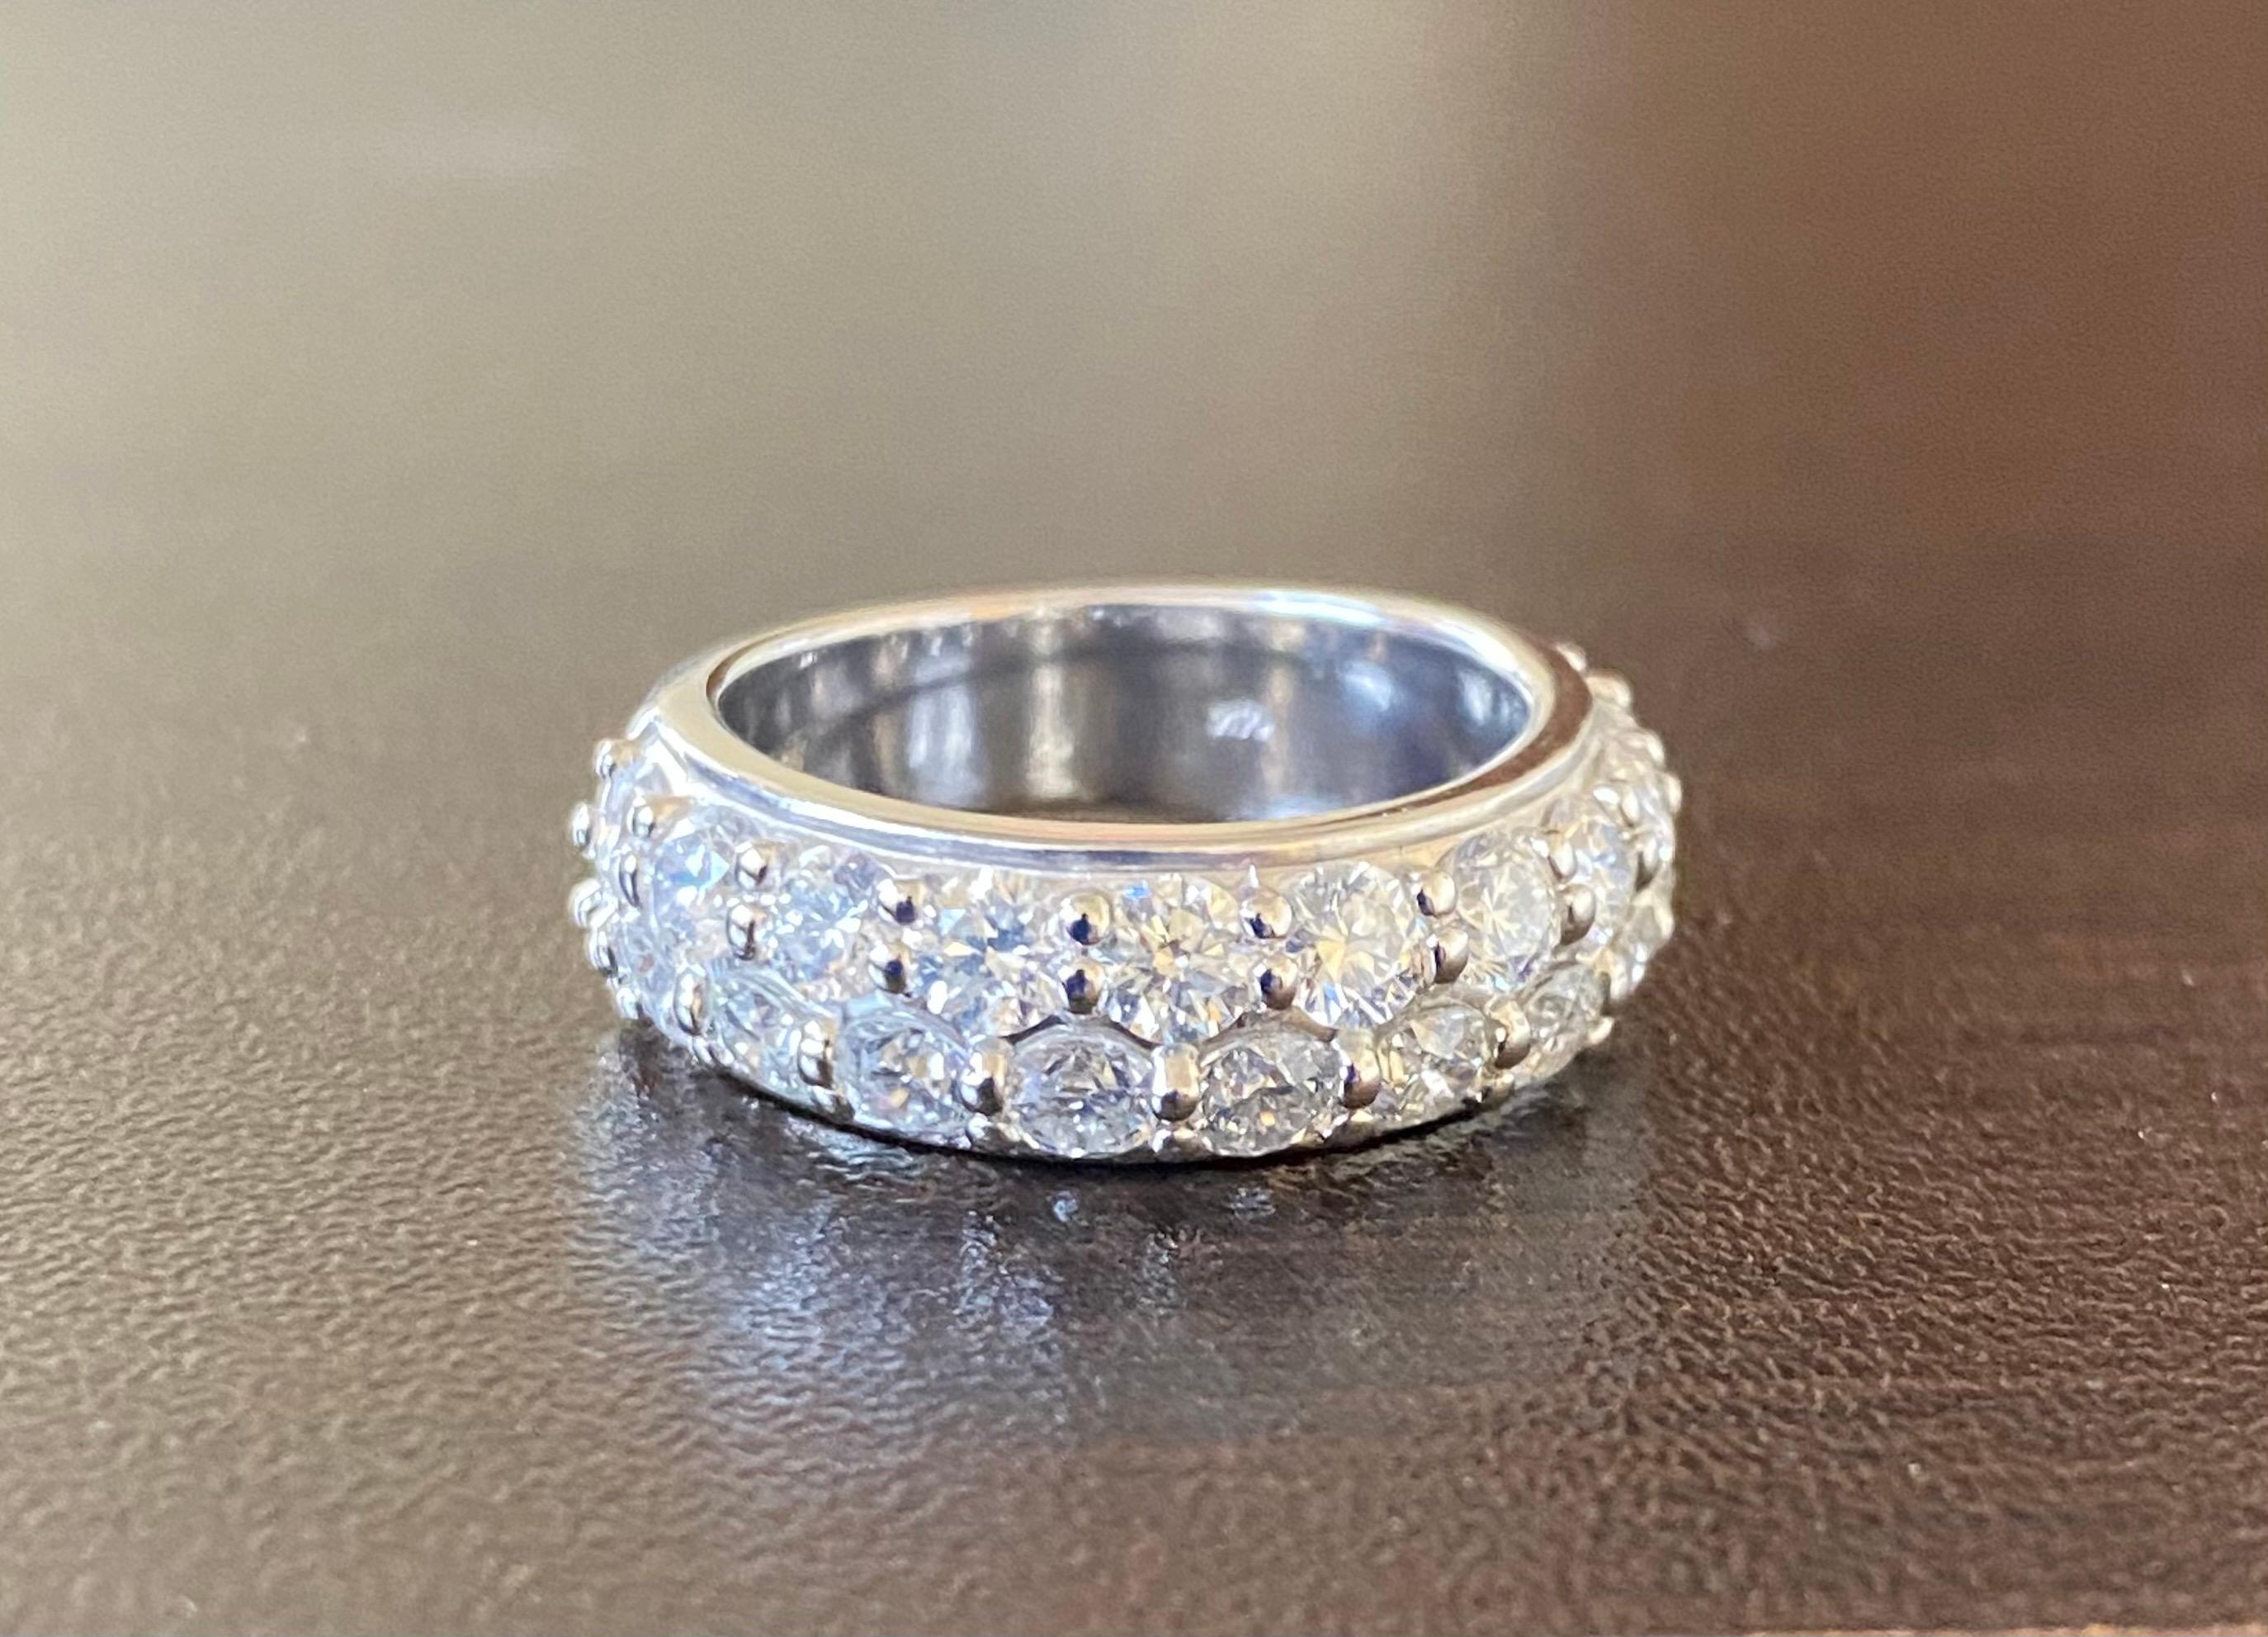 2-reihiger Diamantring, halb in 14K Weißgold gefasst. Der Ring ist mit 20 Steinen von je 0,15 Karat besetzt. Das Gesamtgewicht des Rings beträgt 3,00 Karat. Die Farbe der Steine ist G, die Reinheit ist SI1. Der Ring hat die Größe 6,5.